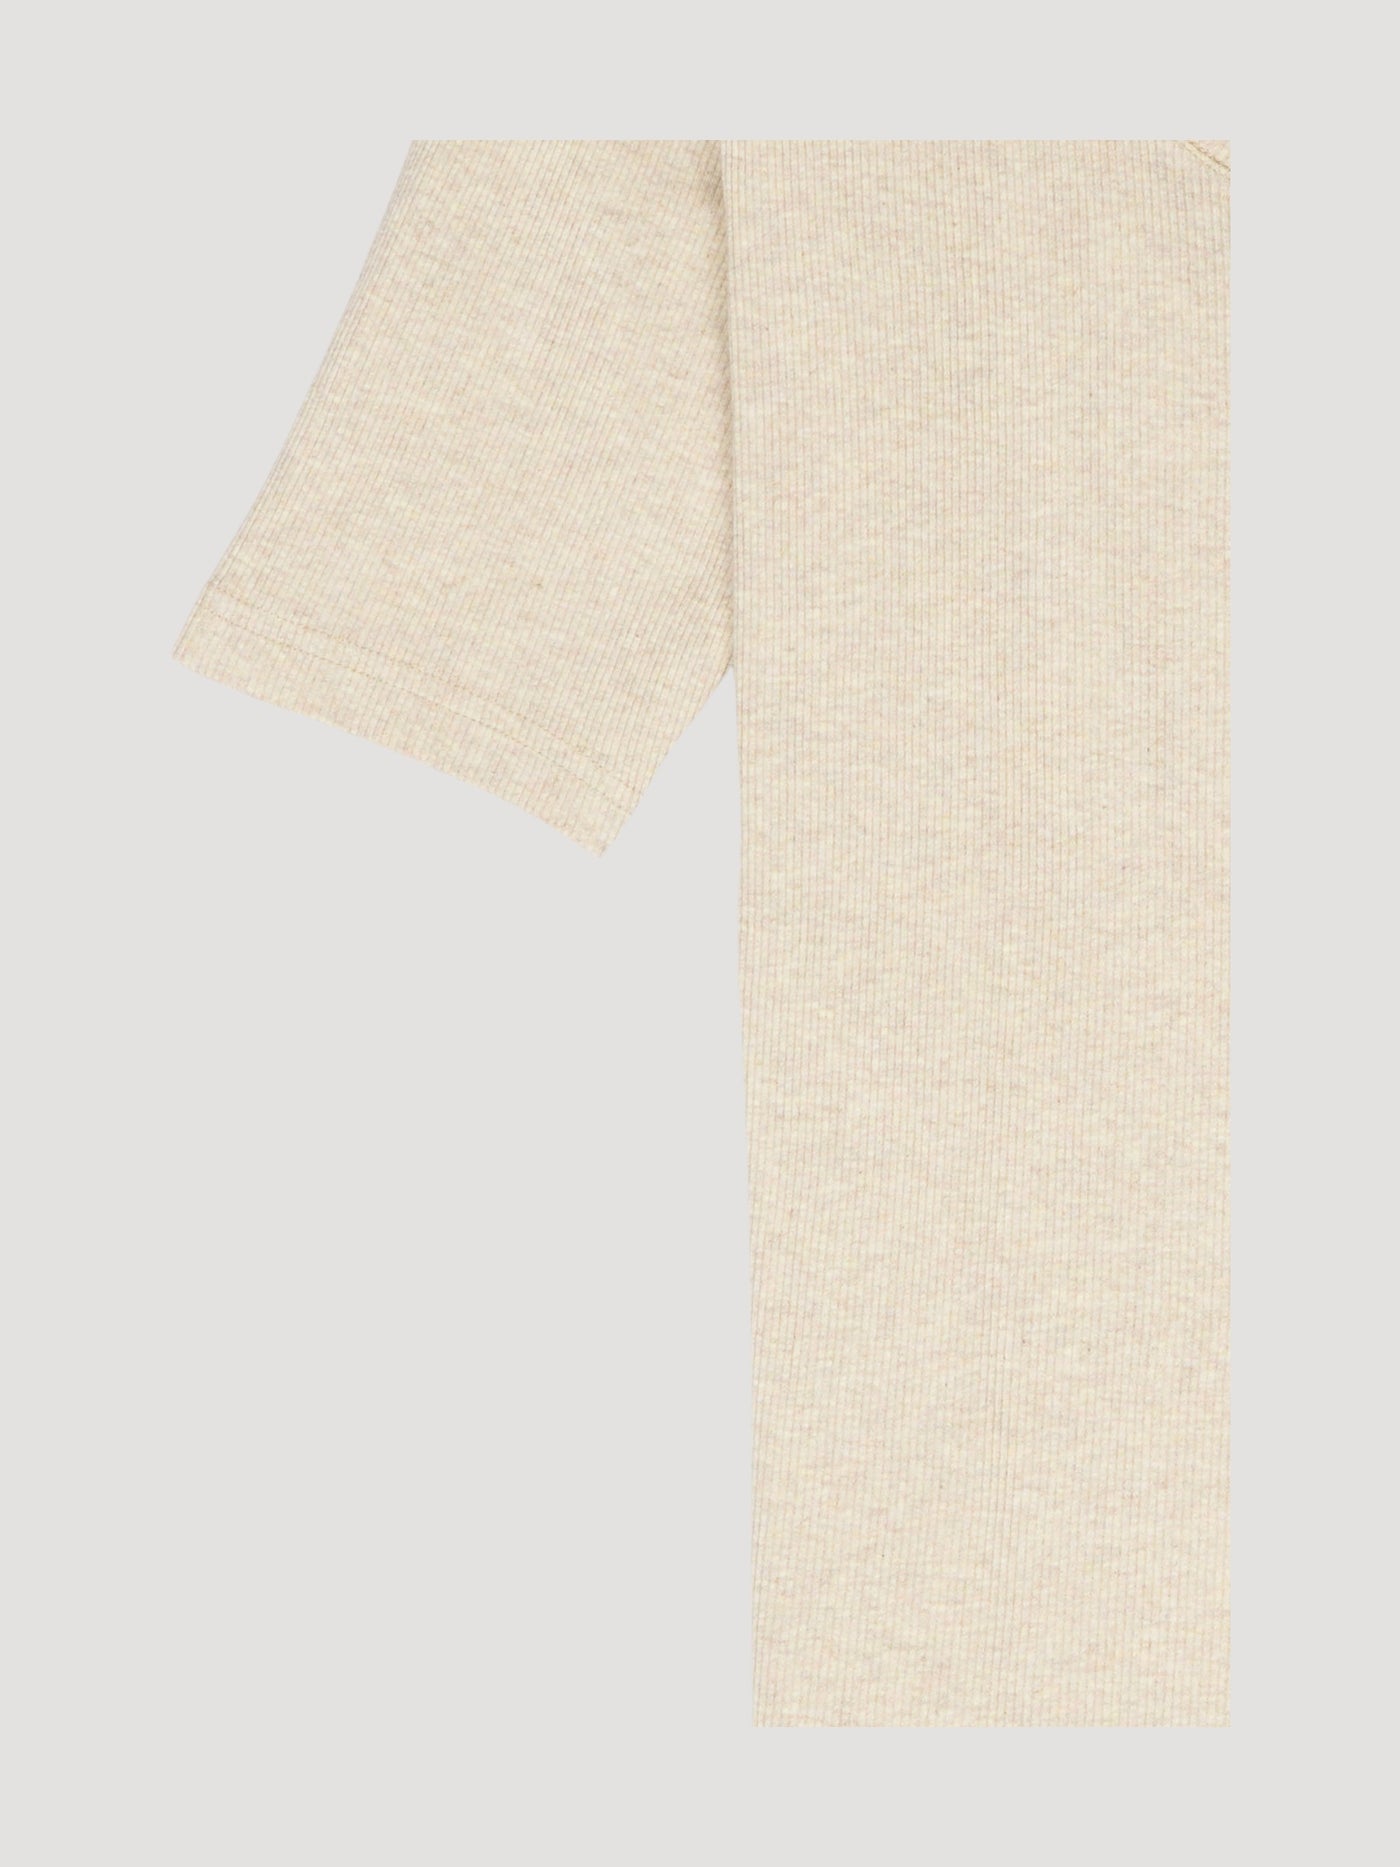 Secondhand Halbarm-Shirt aus reiner Bio-Baumwolle